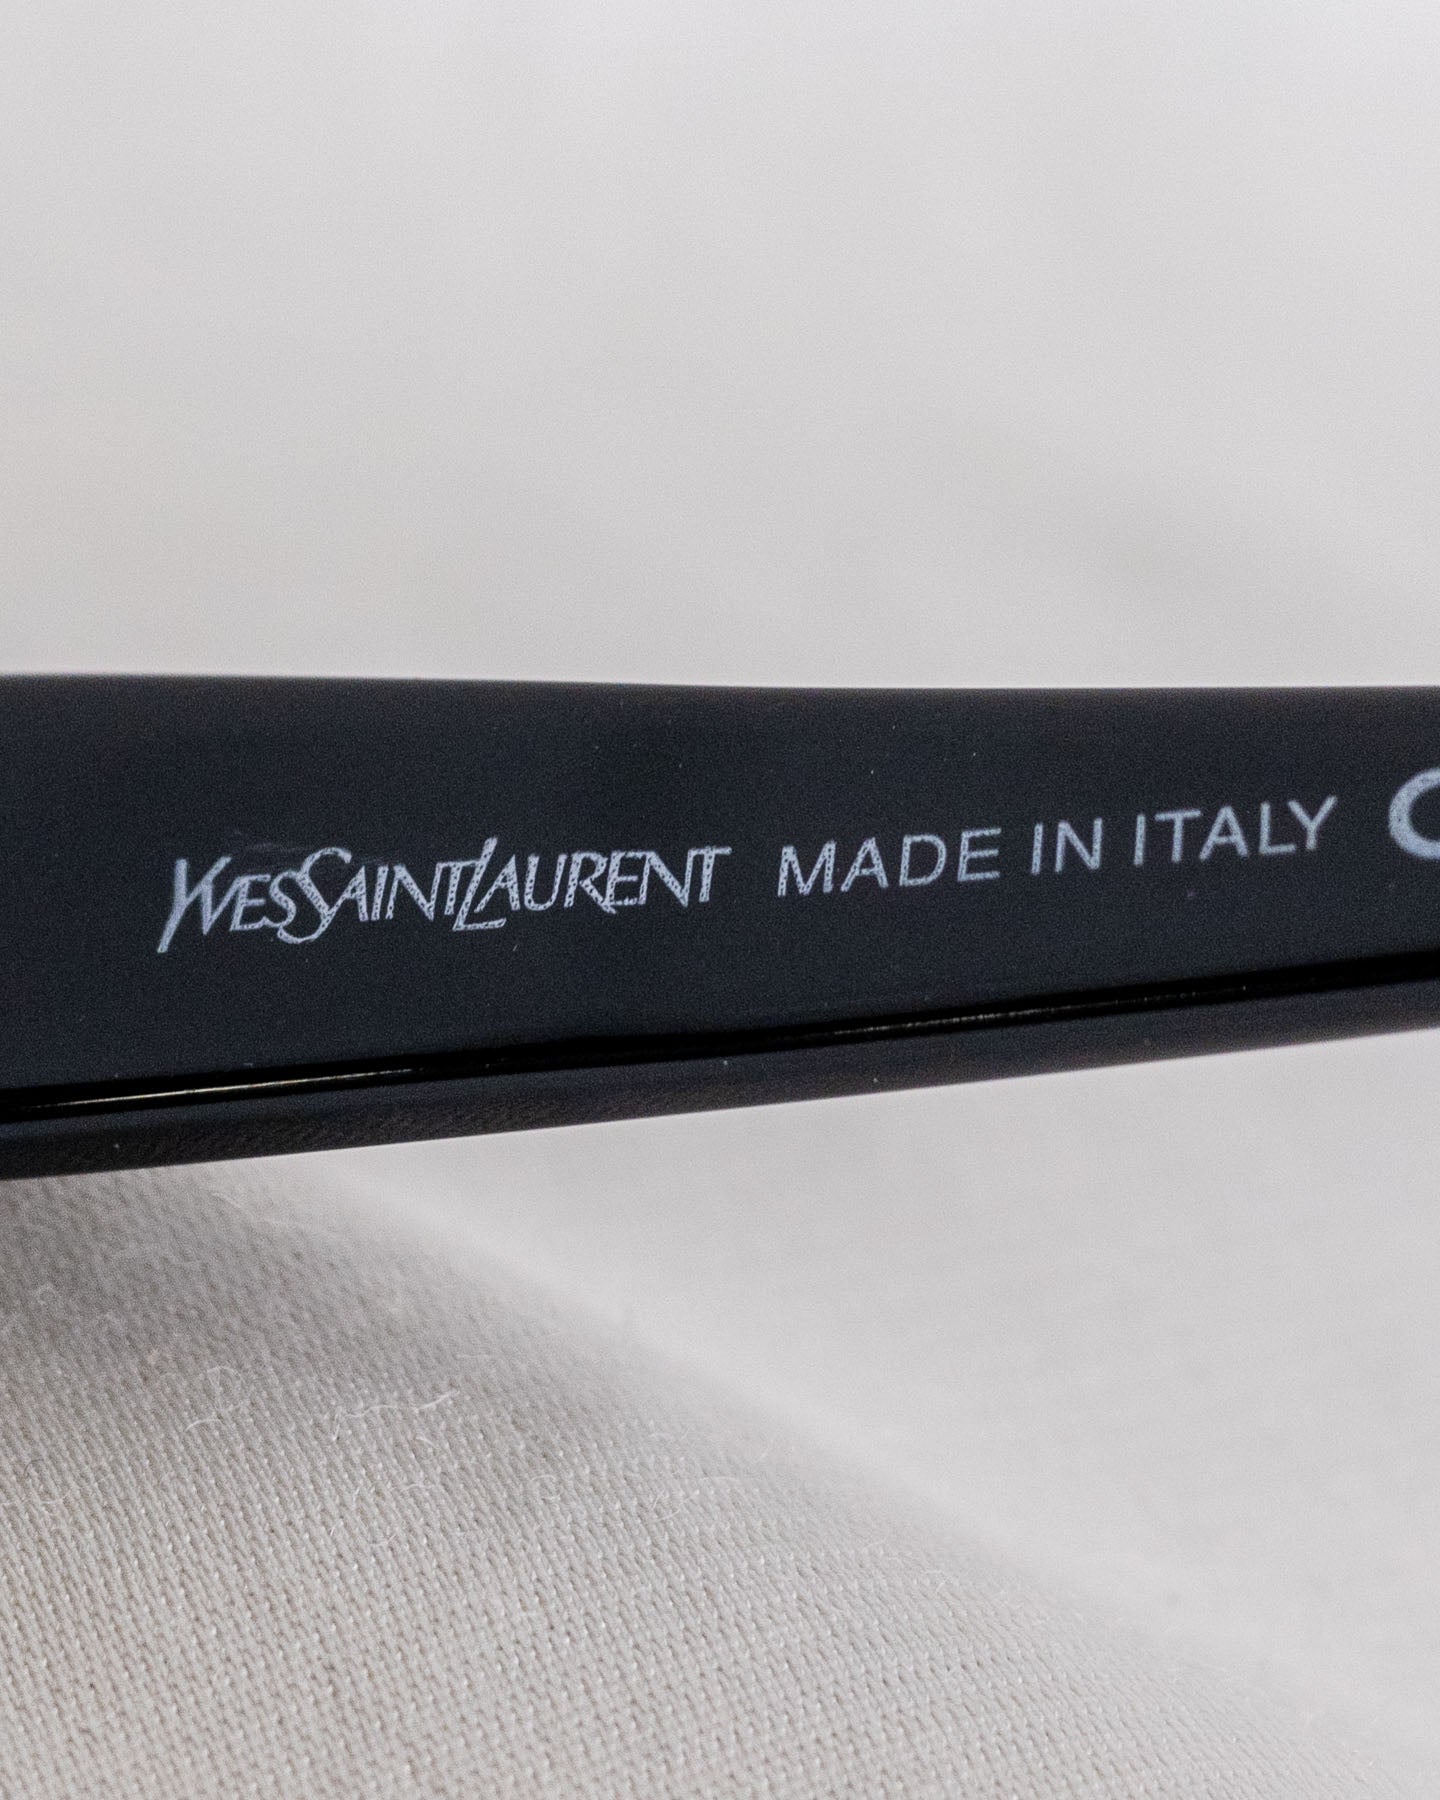 Yves Saint Laurent Oval Frames Black Sunglasses